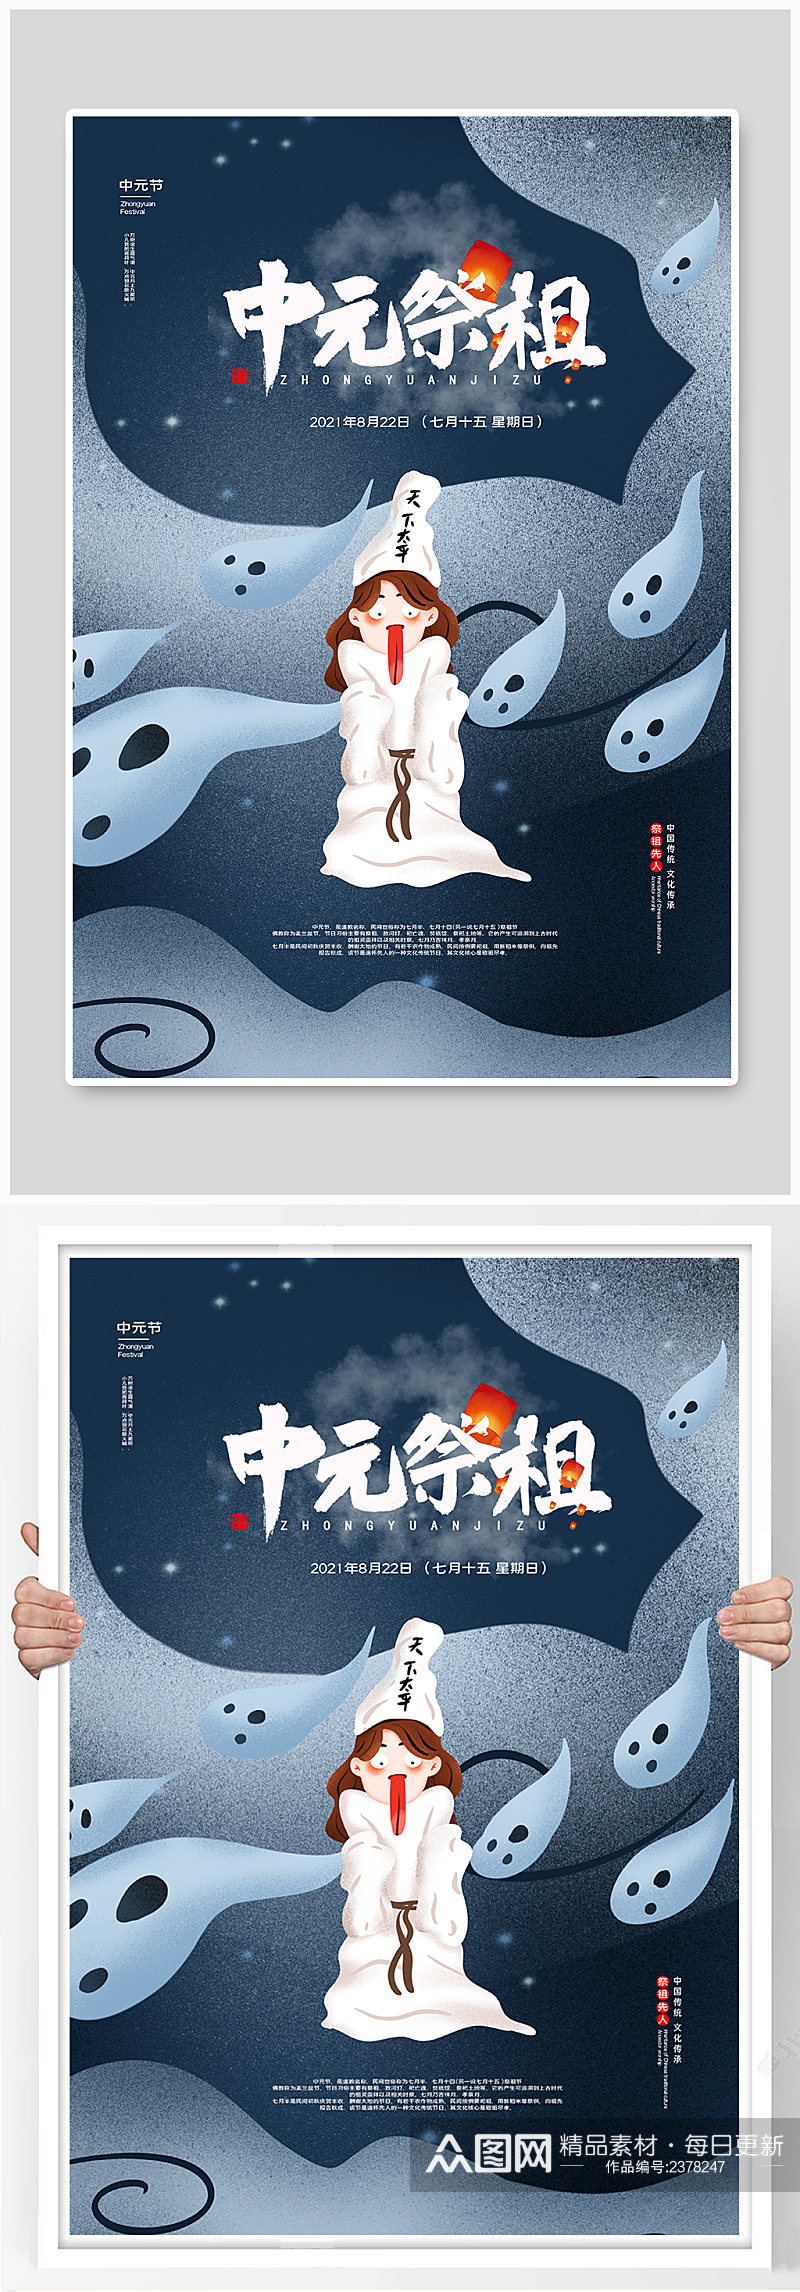 中元节祭祖宣传海报素材